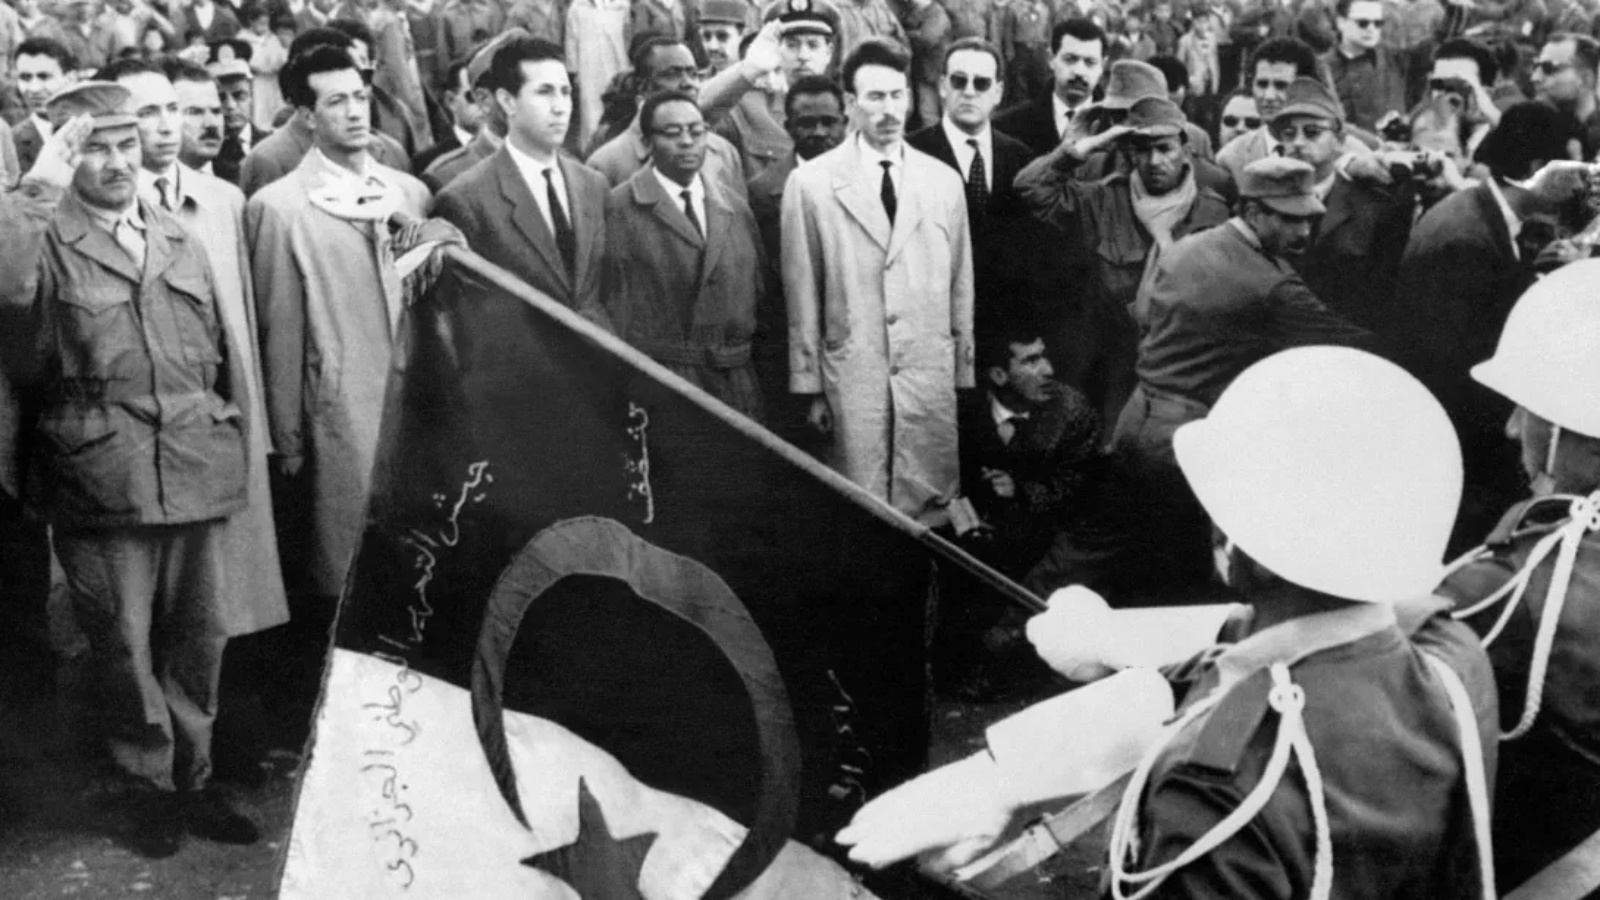  قادة جبهة التحرير الوطني شاركوا في عرض لوحدات جيش التحرير وتجمعوا أمام علم الولاية 23 مارس 1962